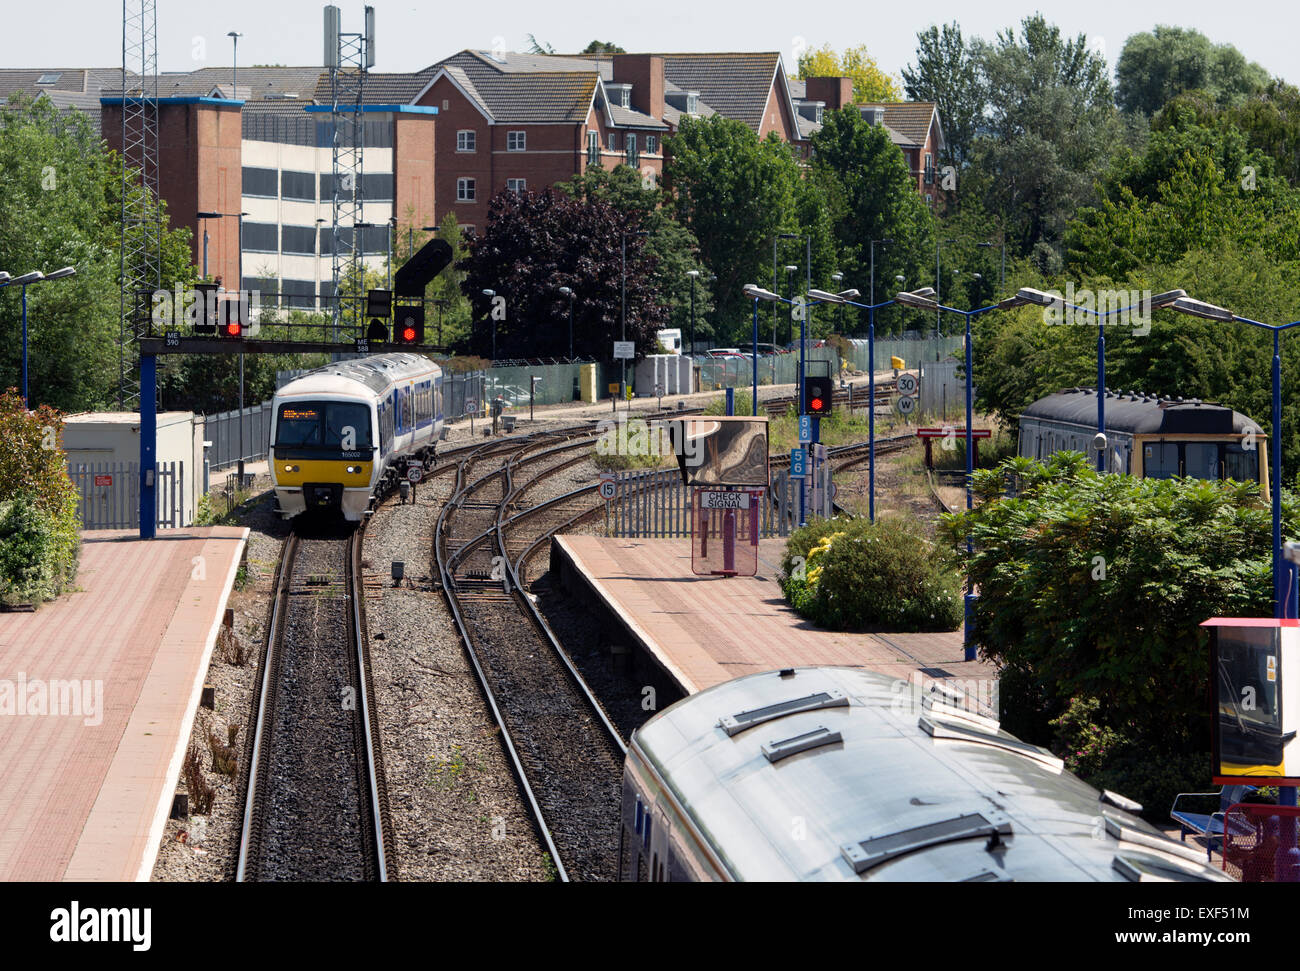 Aylesbury railway station, Buckinghamshire, England, UK Stock Photo